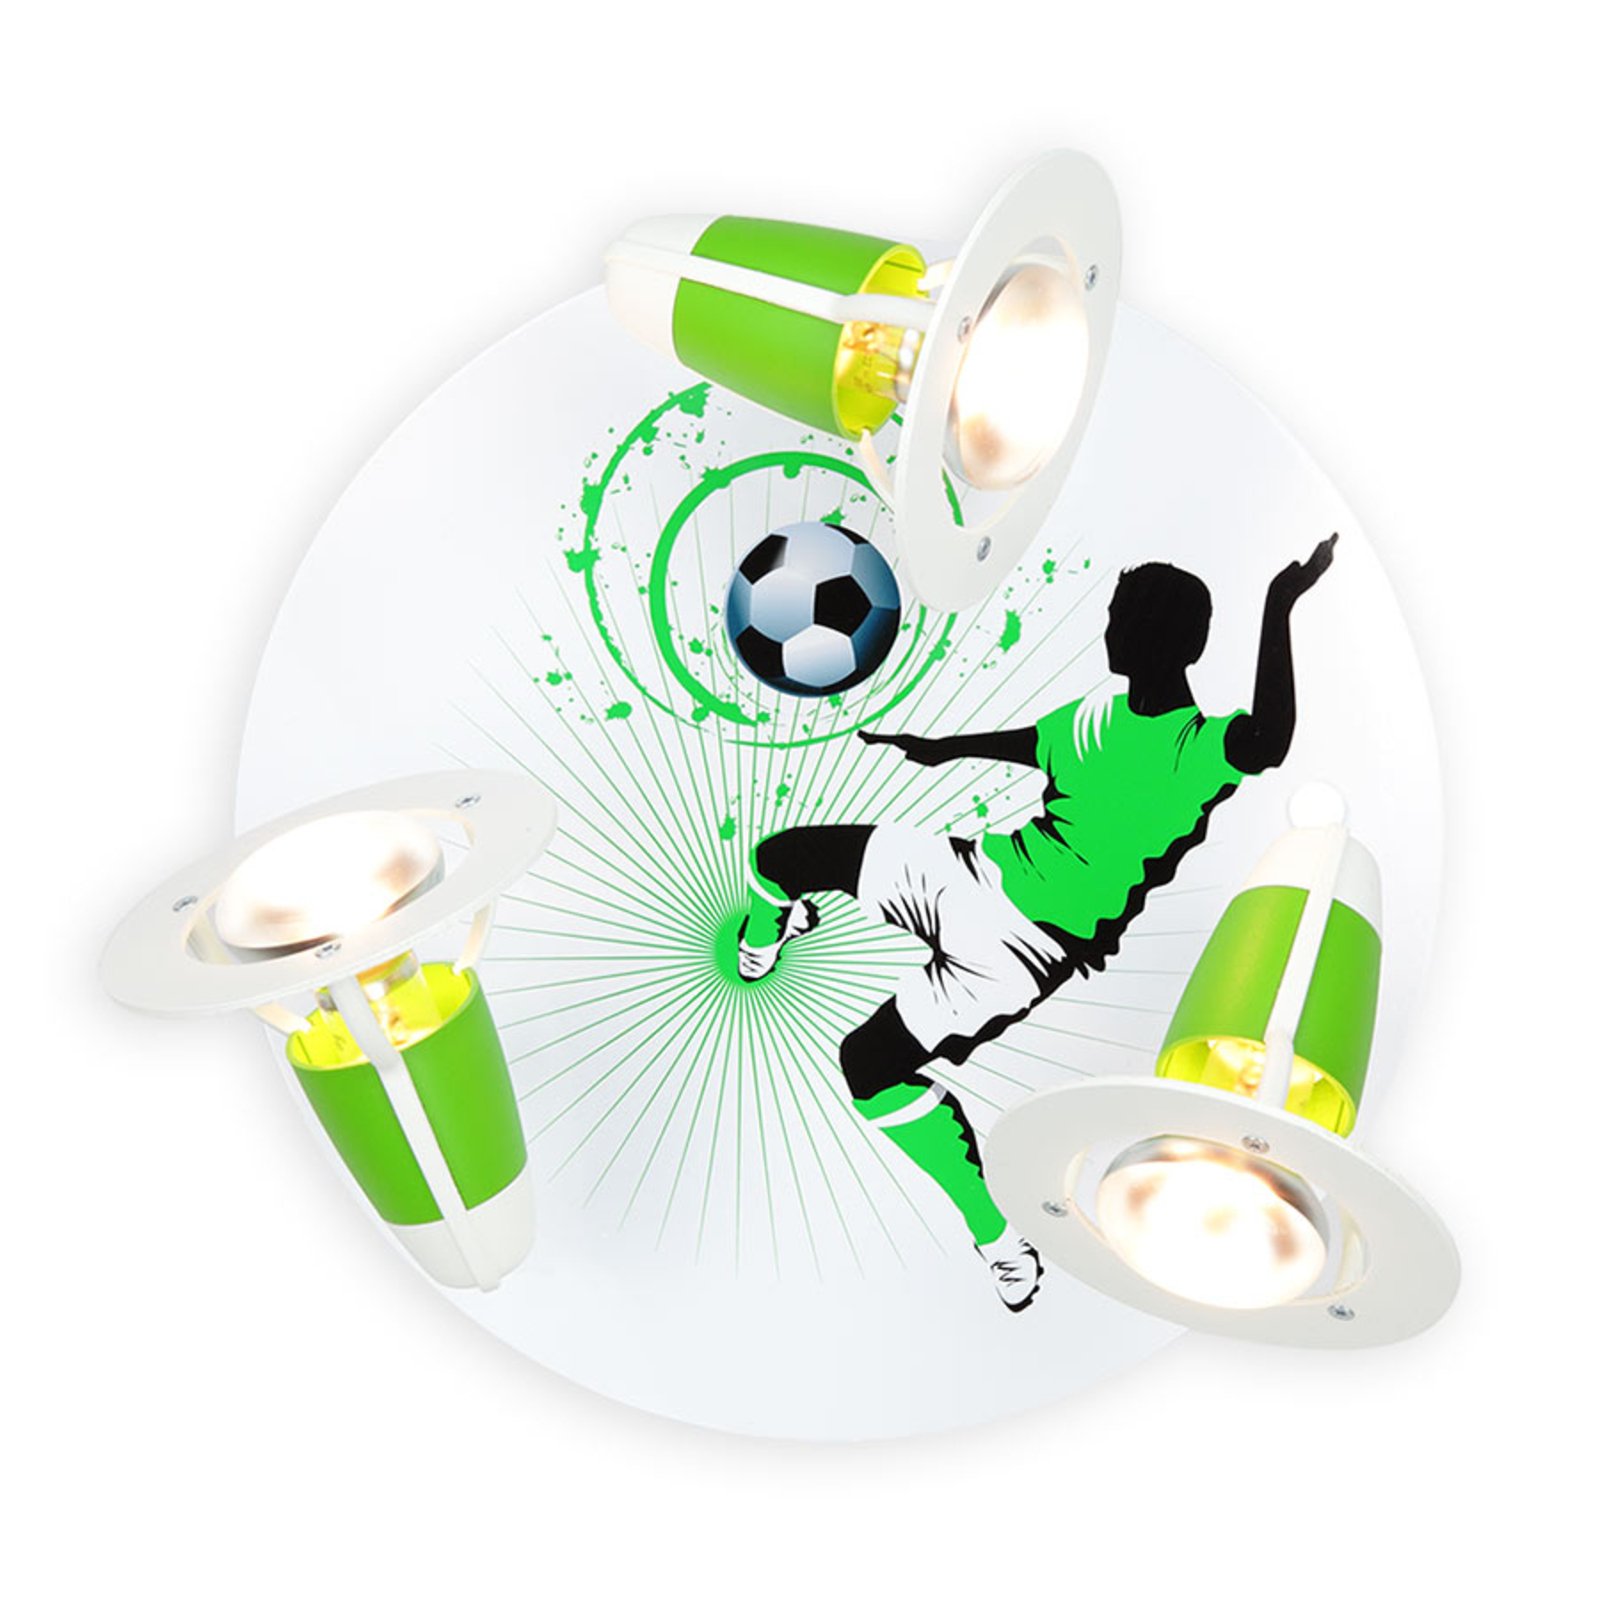 Taklampa Soccer, 3 lampor, grön-vit